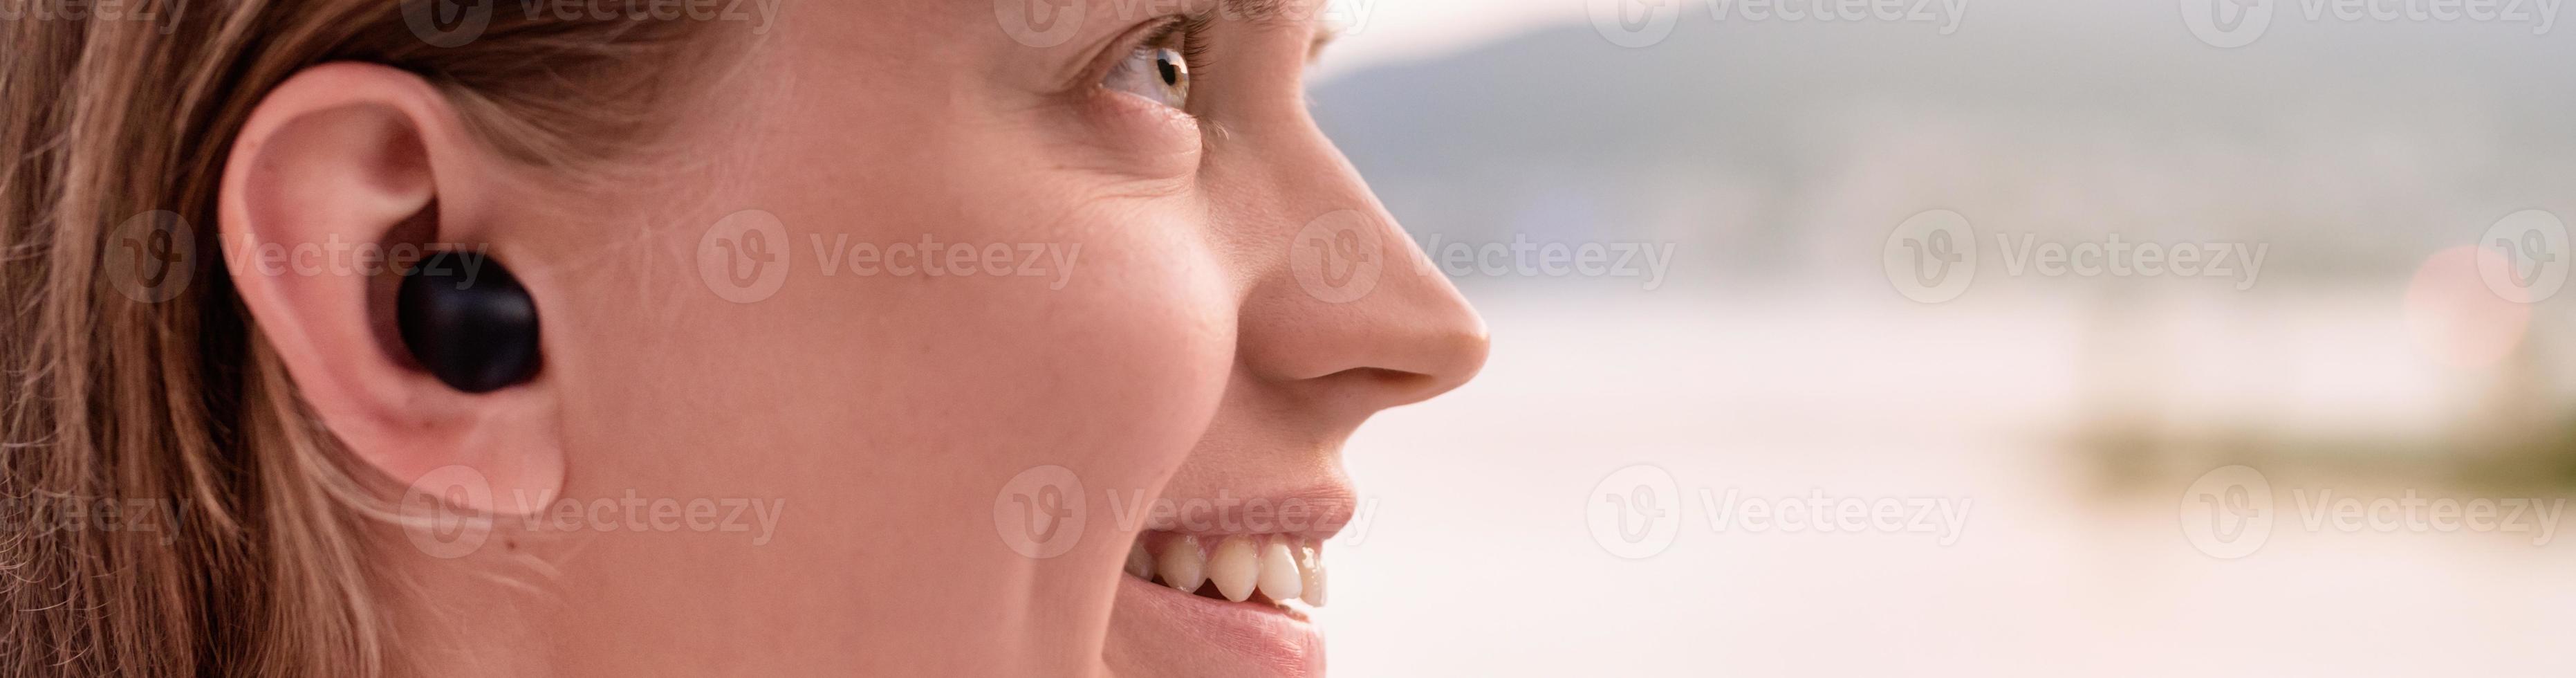 vrouw die draadloze oortjes gebruikt, kust op de achtergrond foto